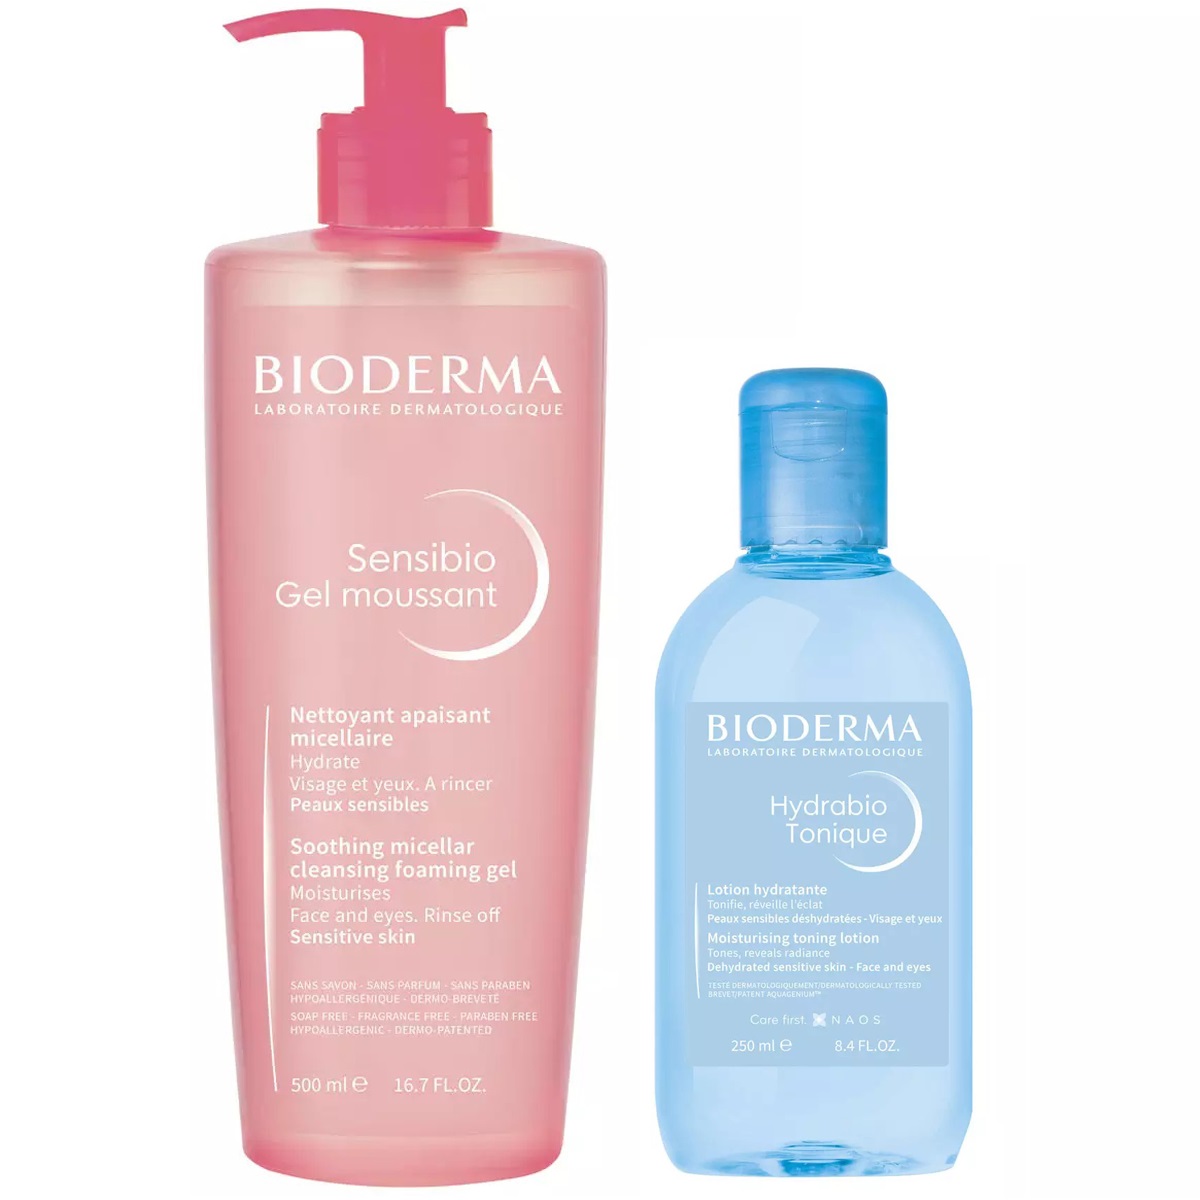 Bioderma Набор для очищения и увлажнения кожи: лосьон, 250 мл + гель, 500 мл (Bioderma, Sensibio) bioderma увлажняющий лосьон для обезвоженной кожи 250 мл bioderma hydrabio